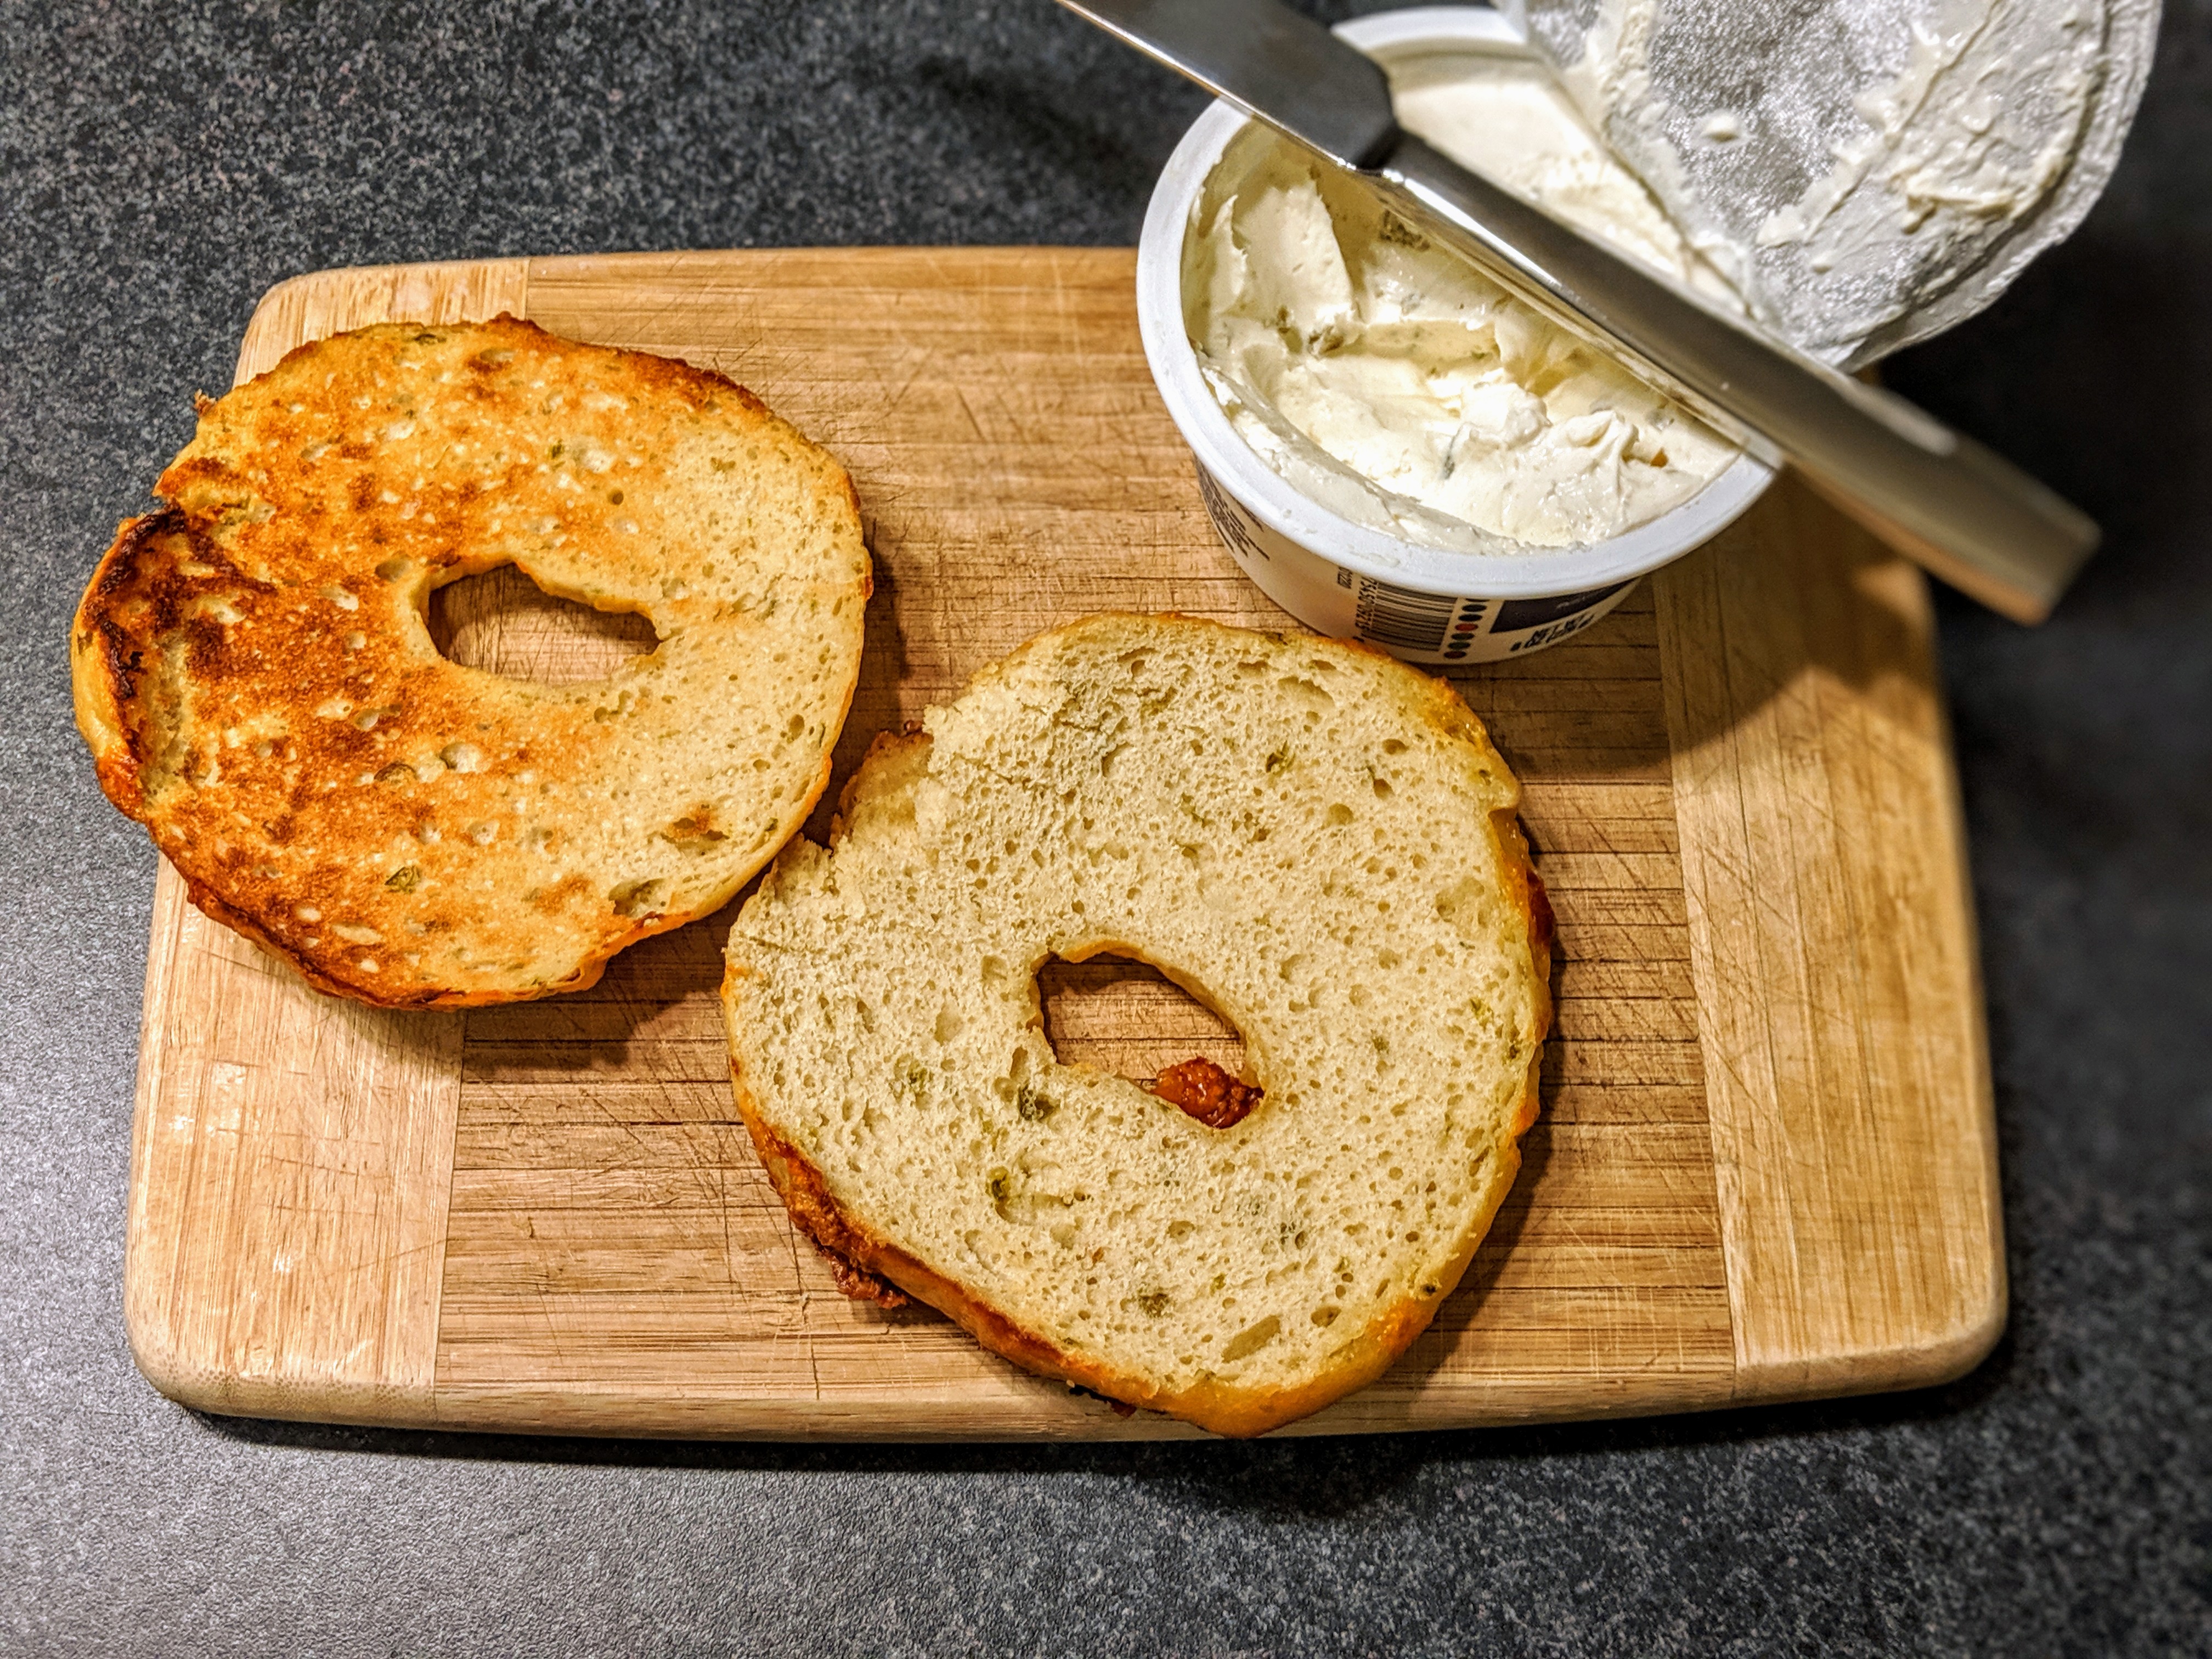 Homemade jalapeno cheddar bagels